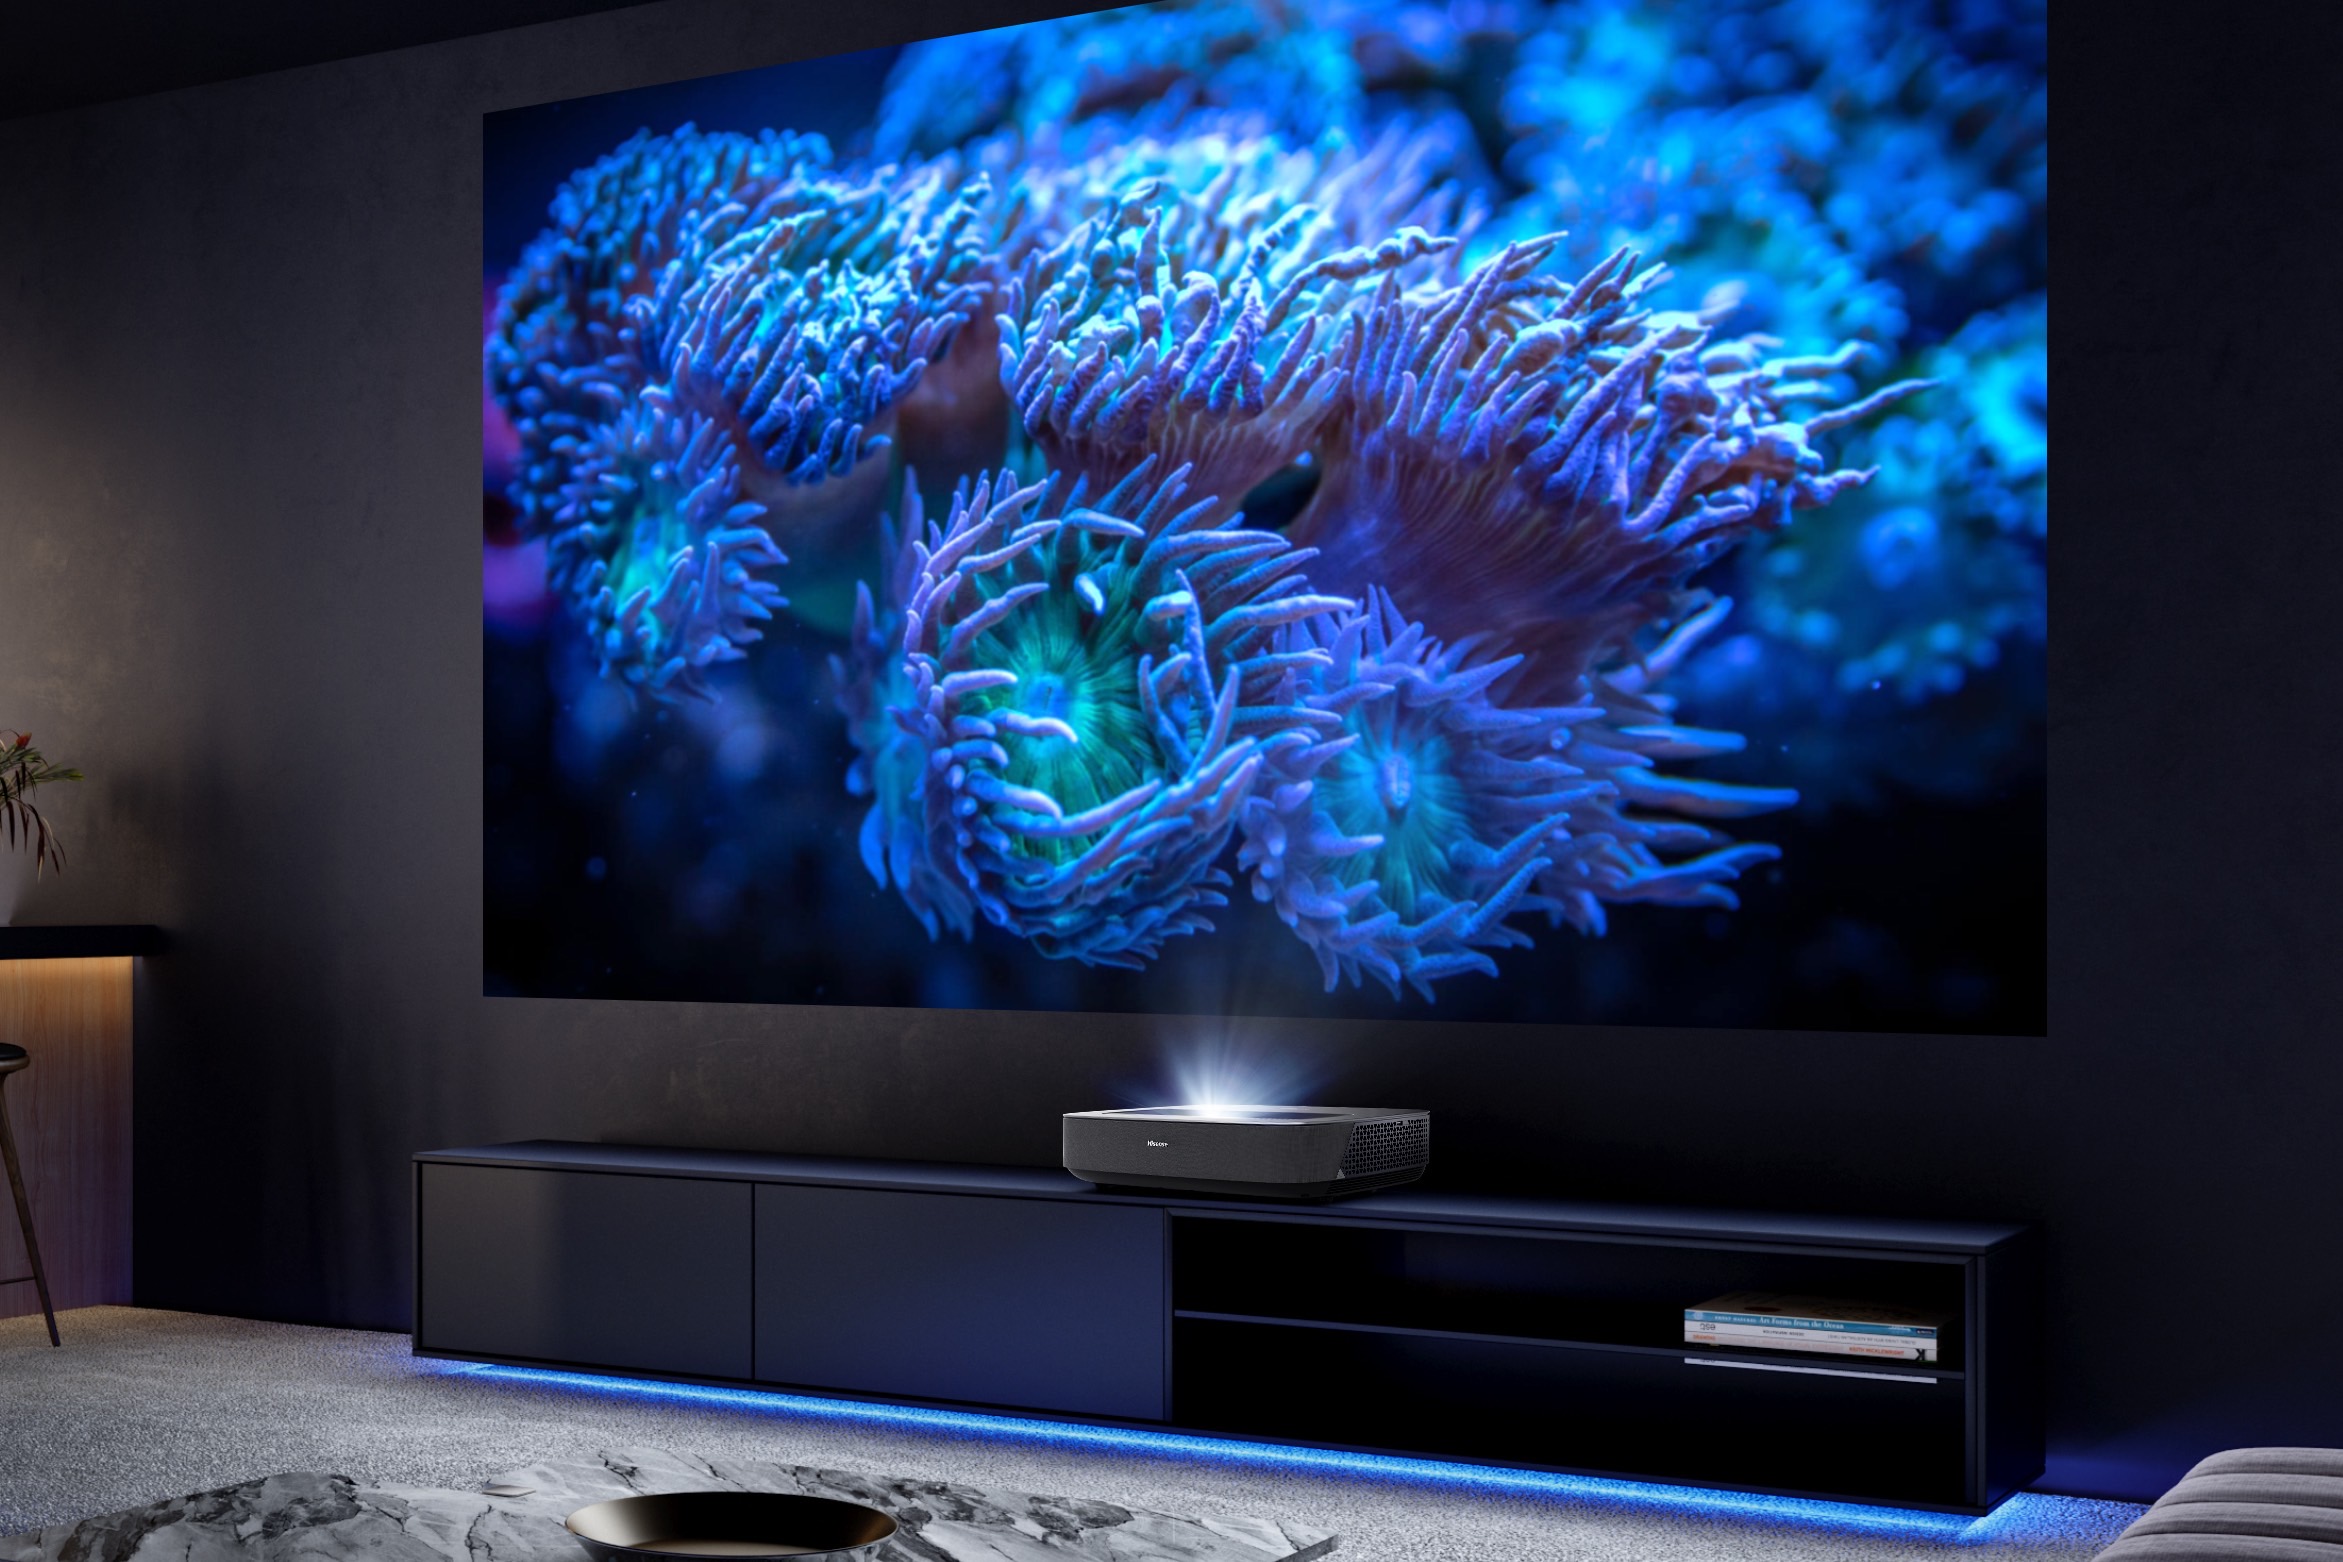 Hisense muestra televisores mini-LED de 98 y 100 pulgadas de gran brillo -  Digital Trends Español